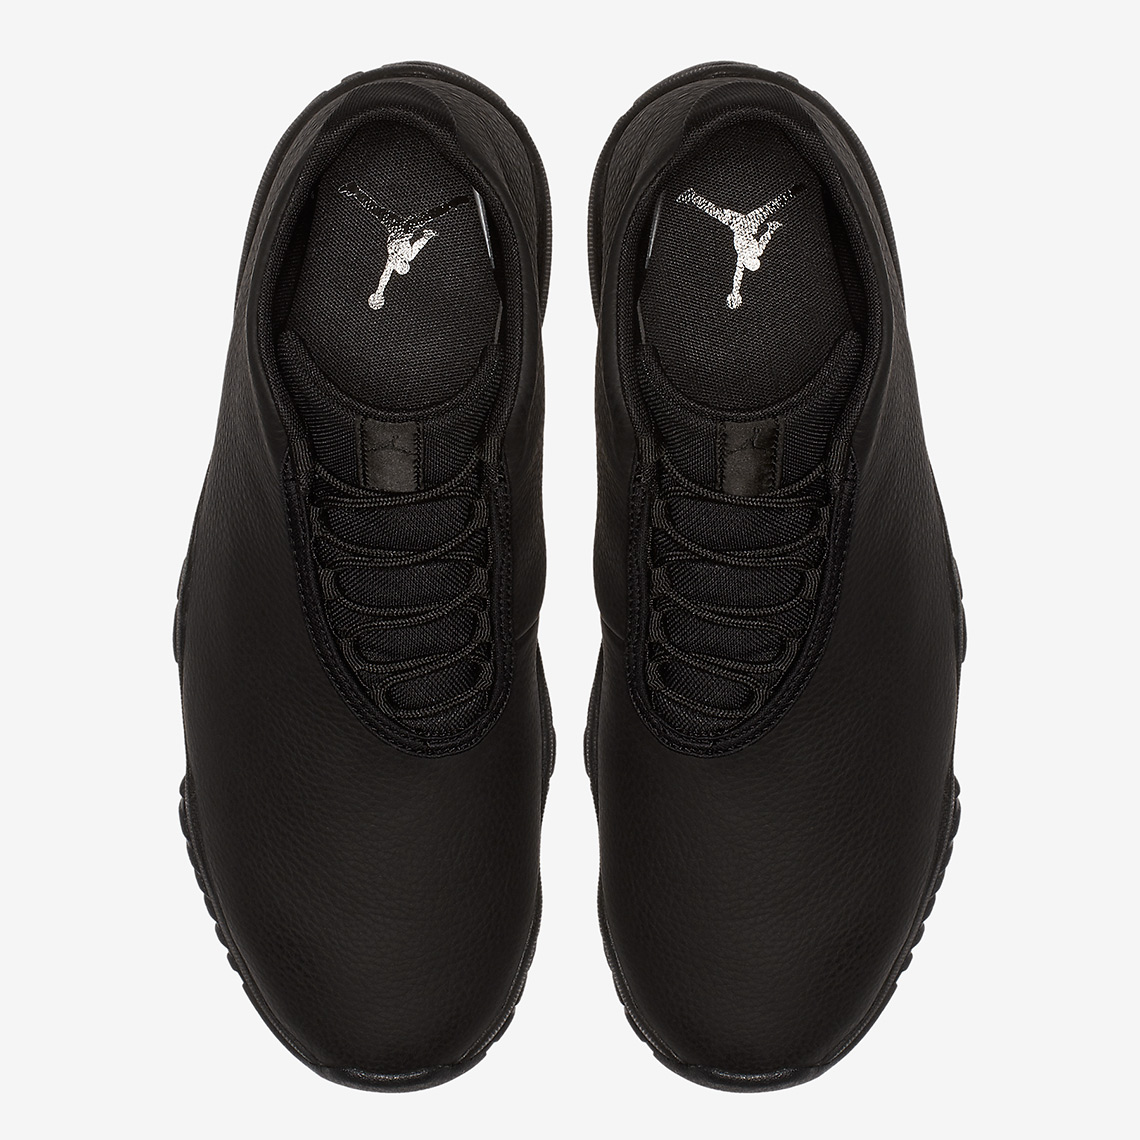 Jordan Future Triple Black Leather Cd1523 002 1